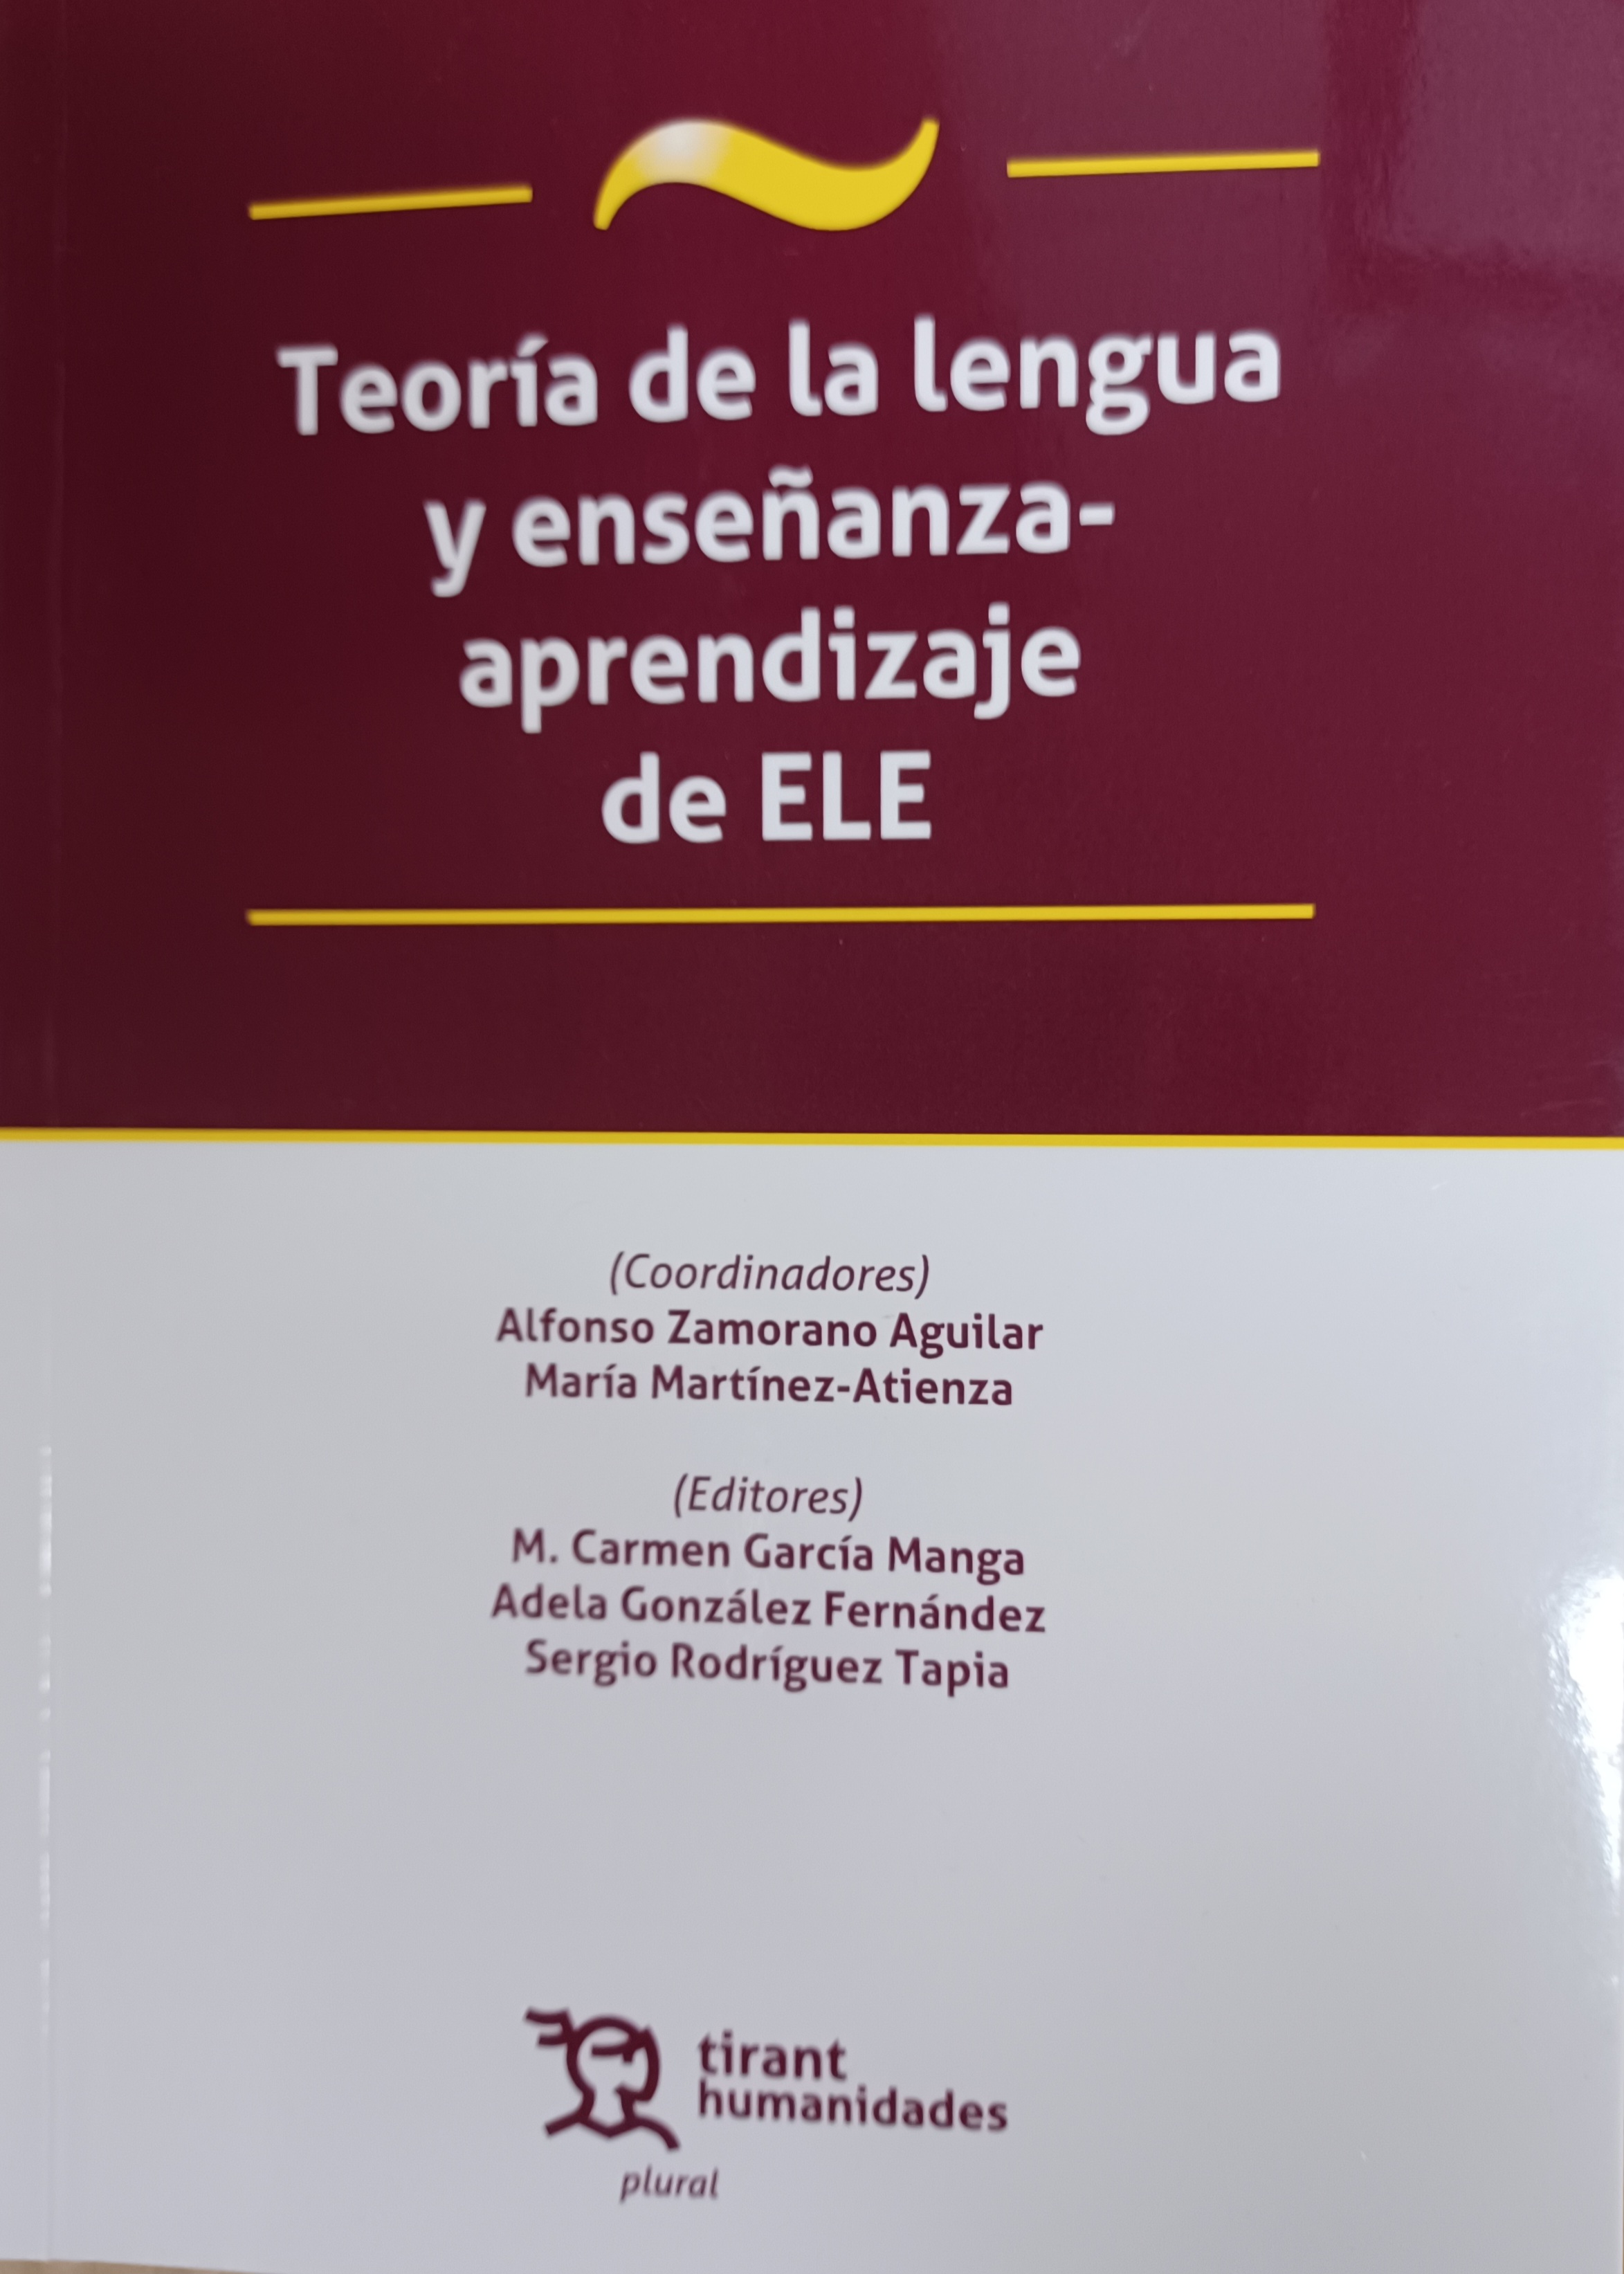 Imagen de portada del libro Teoría de la lengua y enseñanza-aprendizaje de ELE